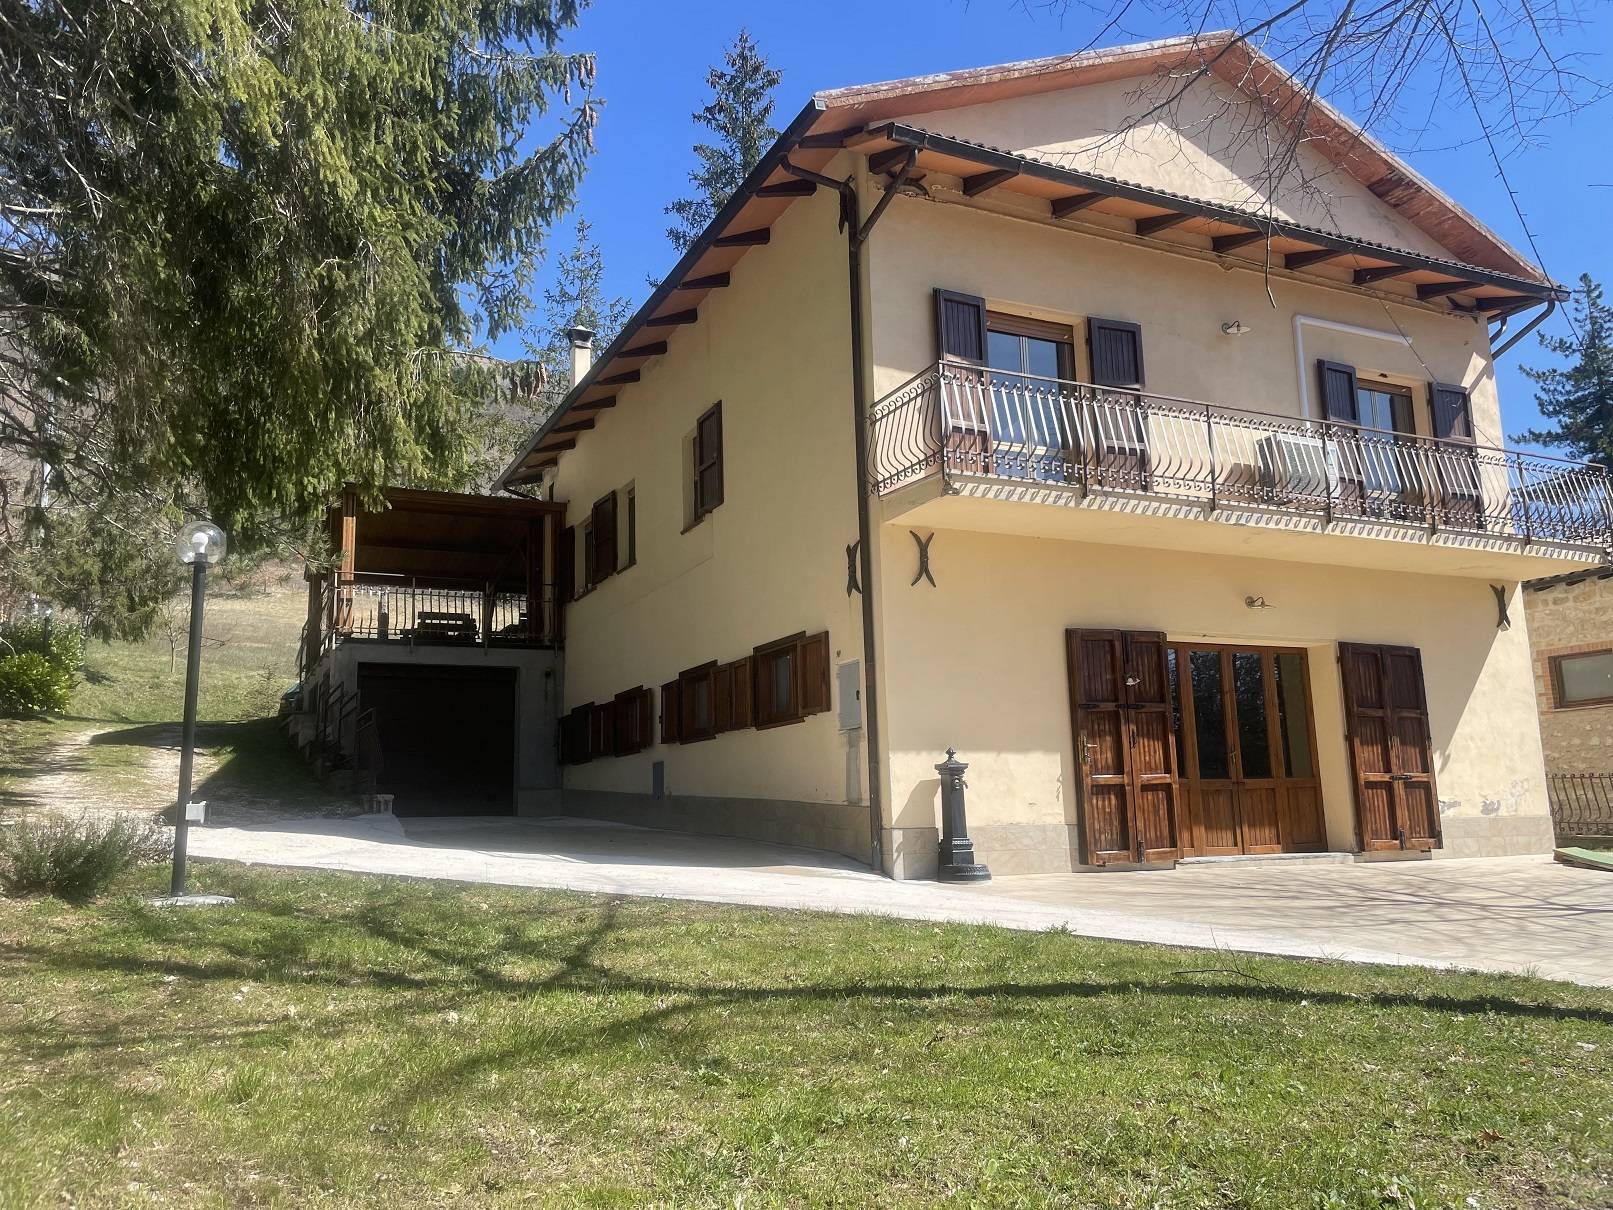 Villa in vendita a Serravalle di Chienti, 5 locali, prezzo € 159.000 | CambioCasa.it